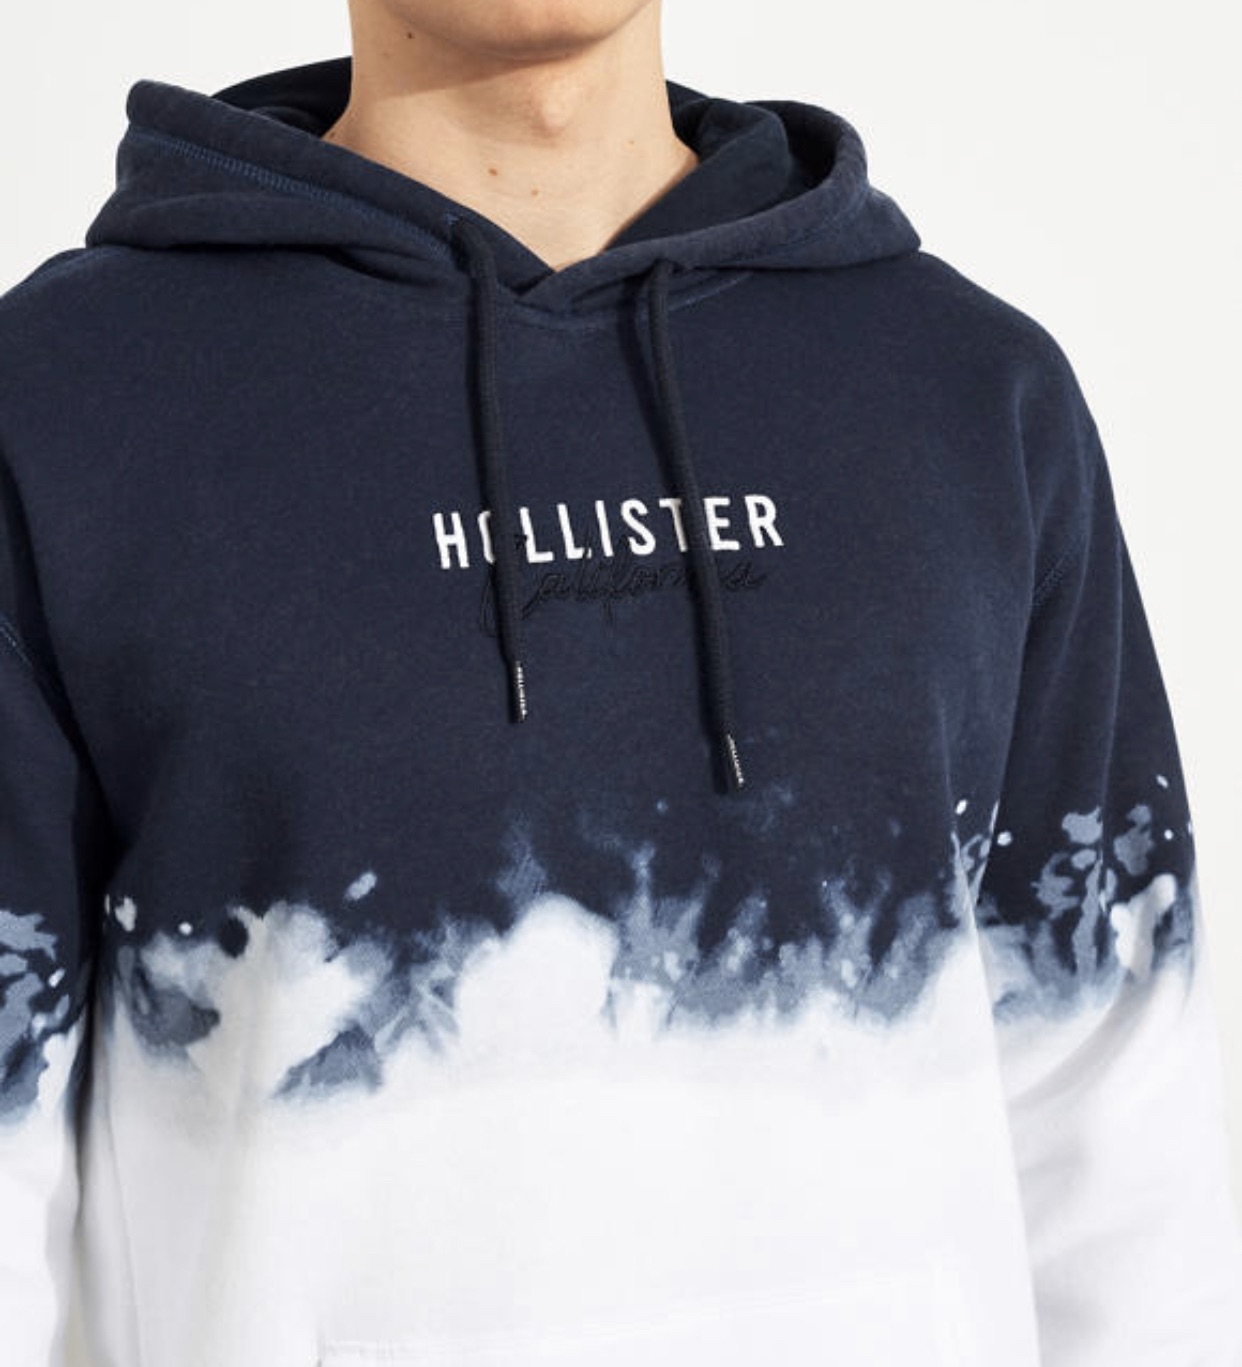 buy hollister hoodies online